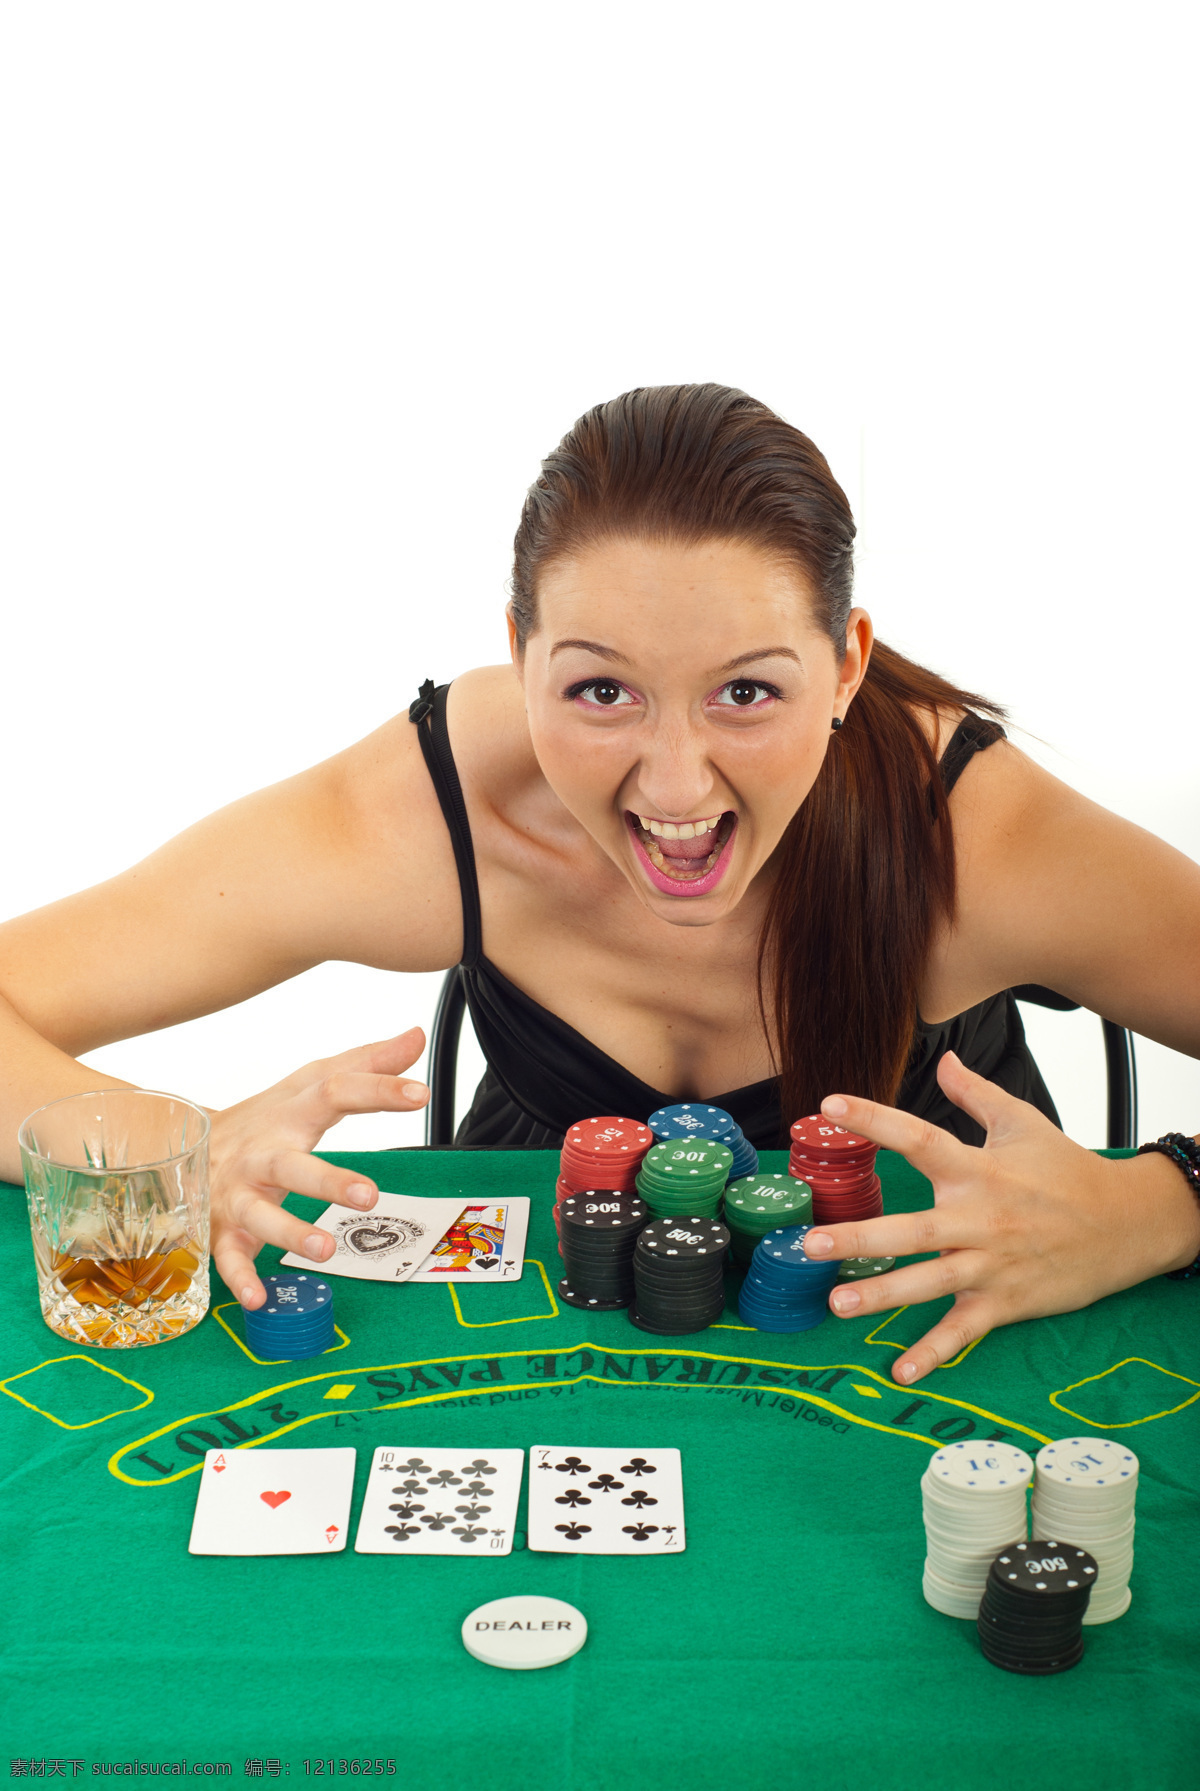 赌场 里 性感美女 赌博 外国美女 时尚女性 赌钱 牌九 筹码 扑克 纸牌 生活人物 人物图片